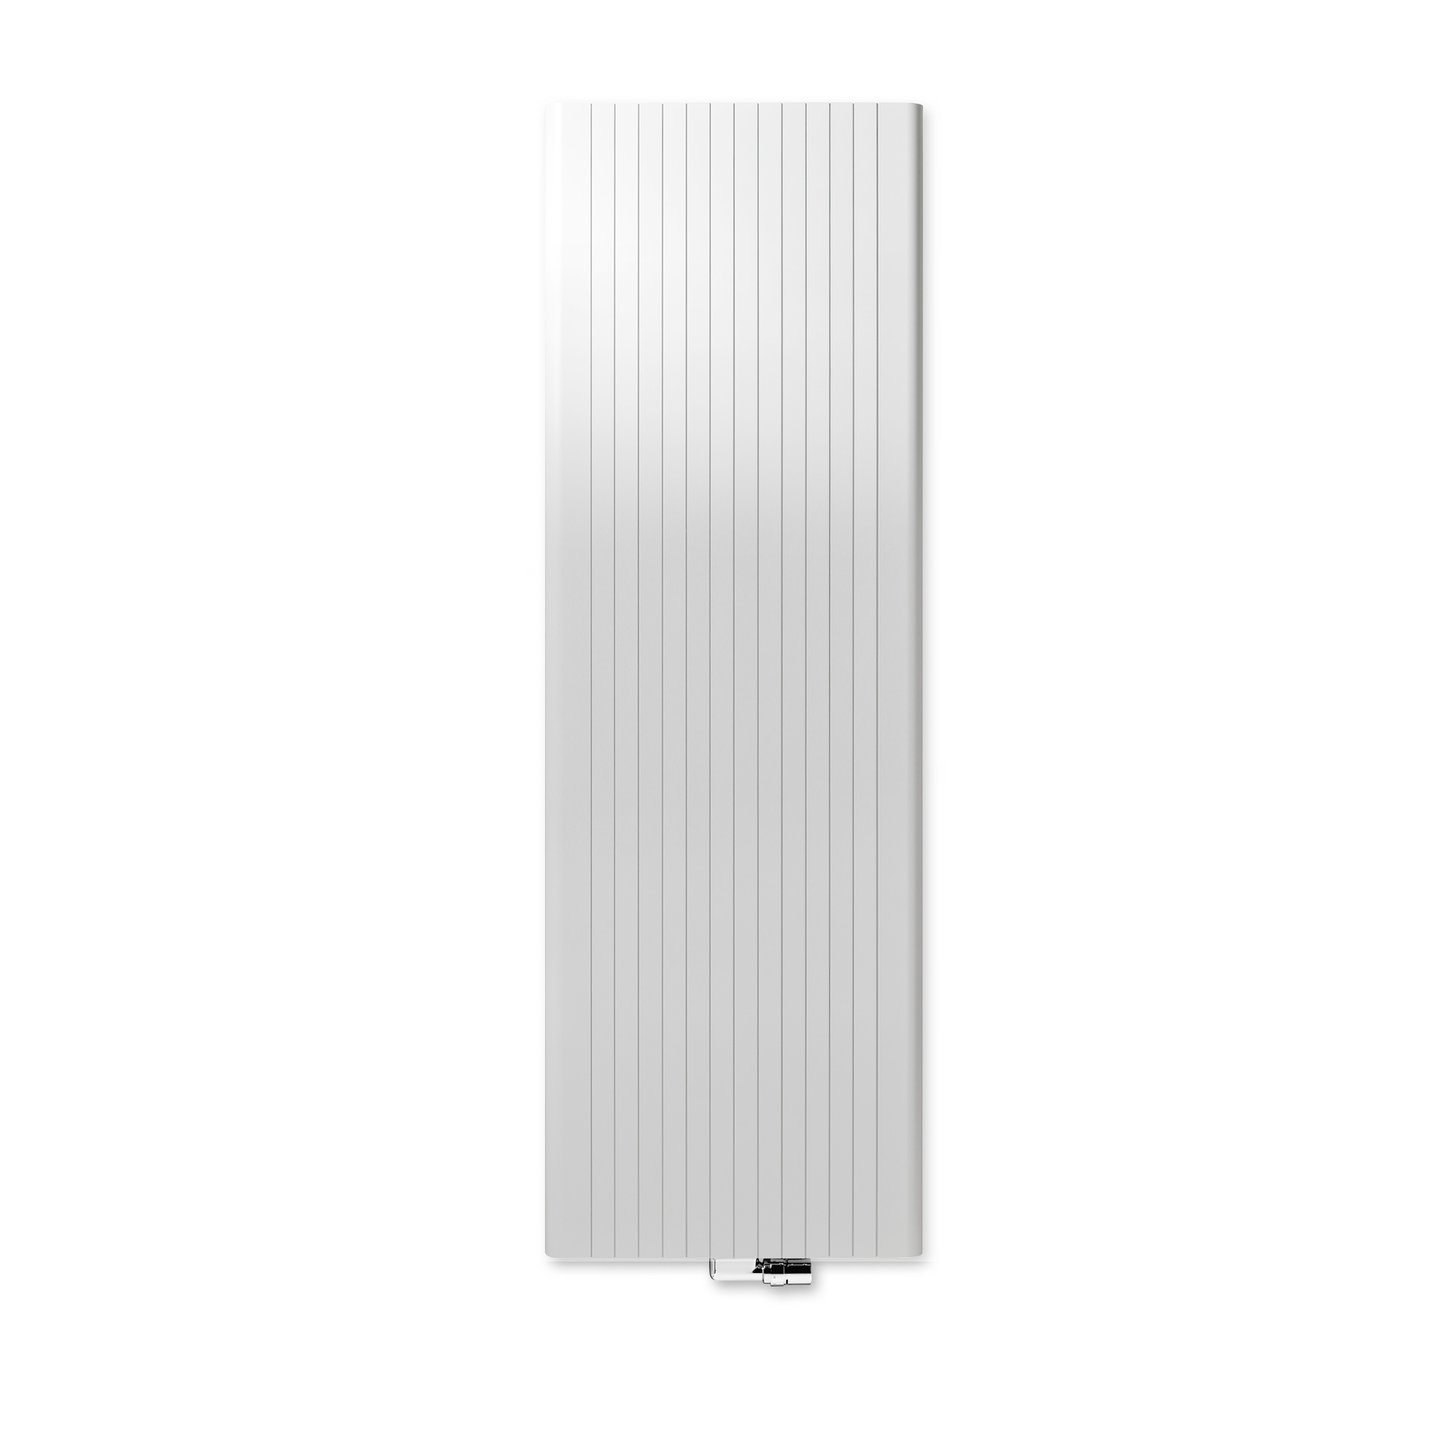 Vasco Vertical radiator white fine texture, width 525 mm, Watt - 111140525200000660600-0000 | REUTER